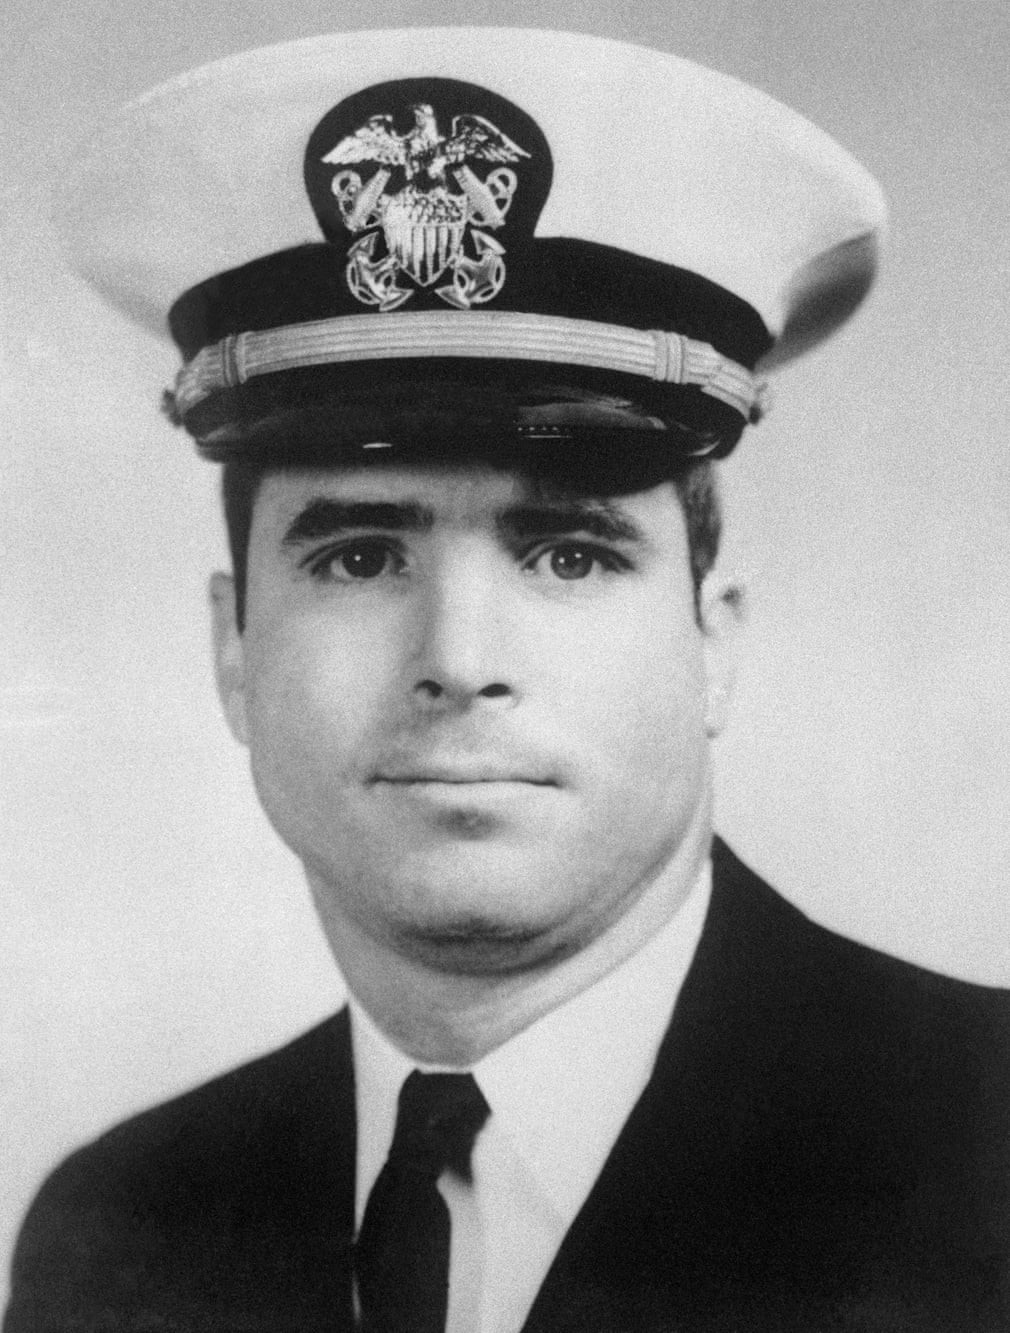 Chân dung John S McCain III trong đồng phục hải quân những năm 1960. Ảnh: Bettmann Archive